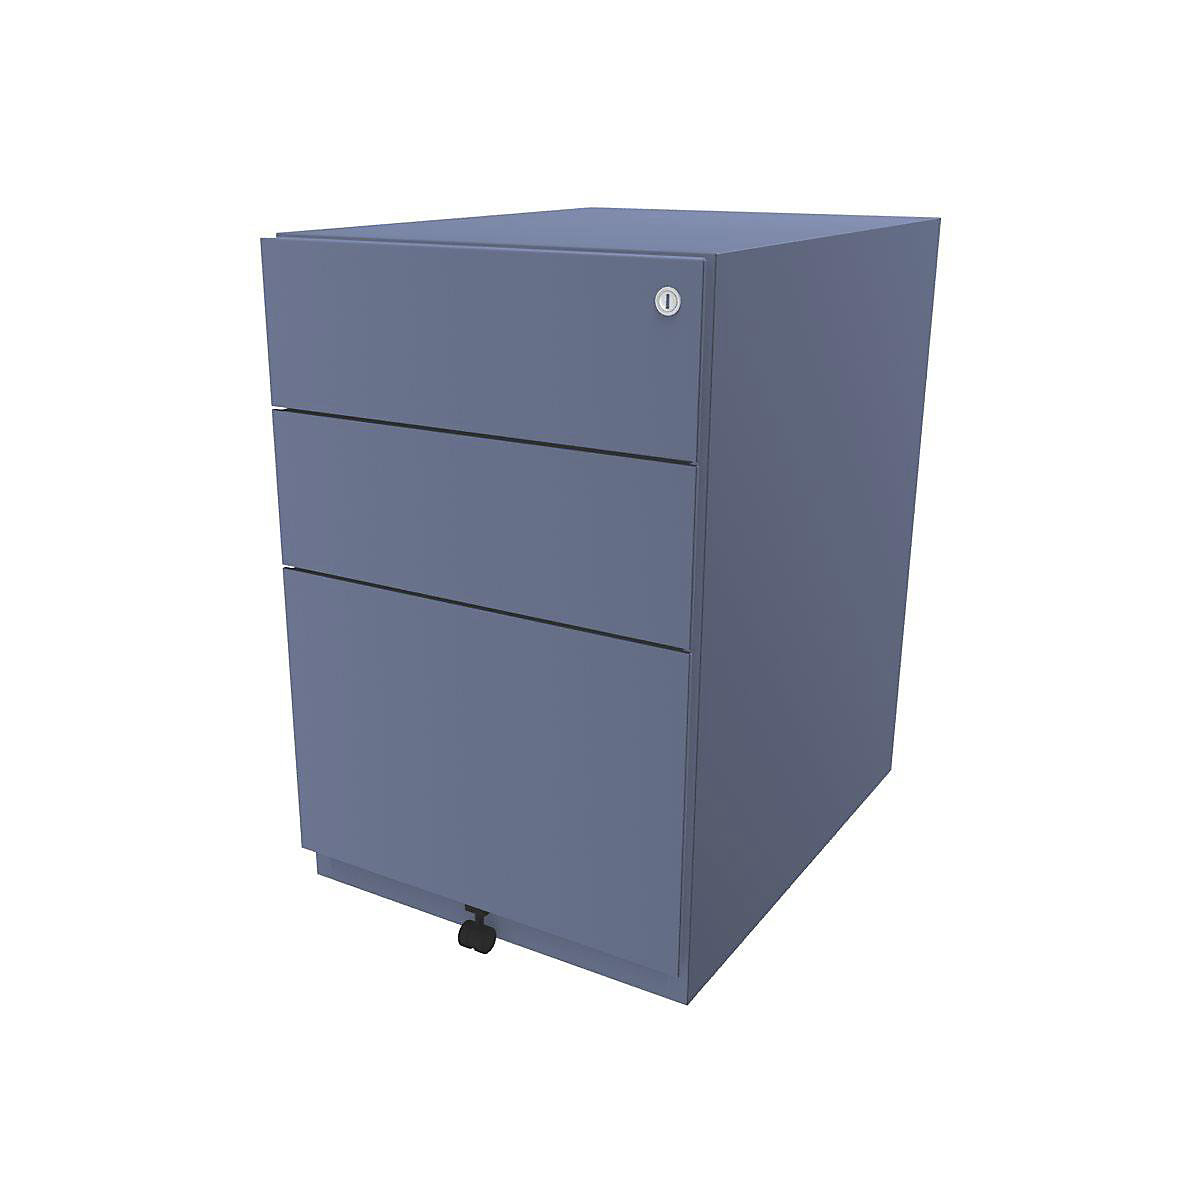 Buck rodante Note™ con 2 cajones universales y 1 archivador colgante – BISLEY, H x A x P 645 x 420 x 565 mm, azul-4